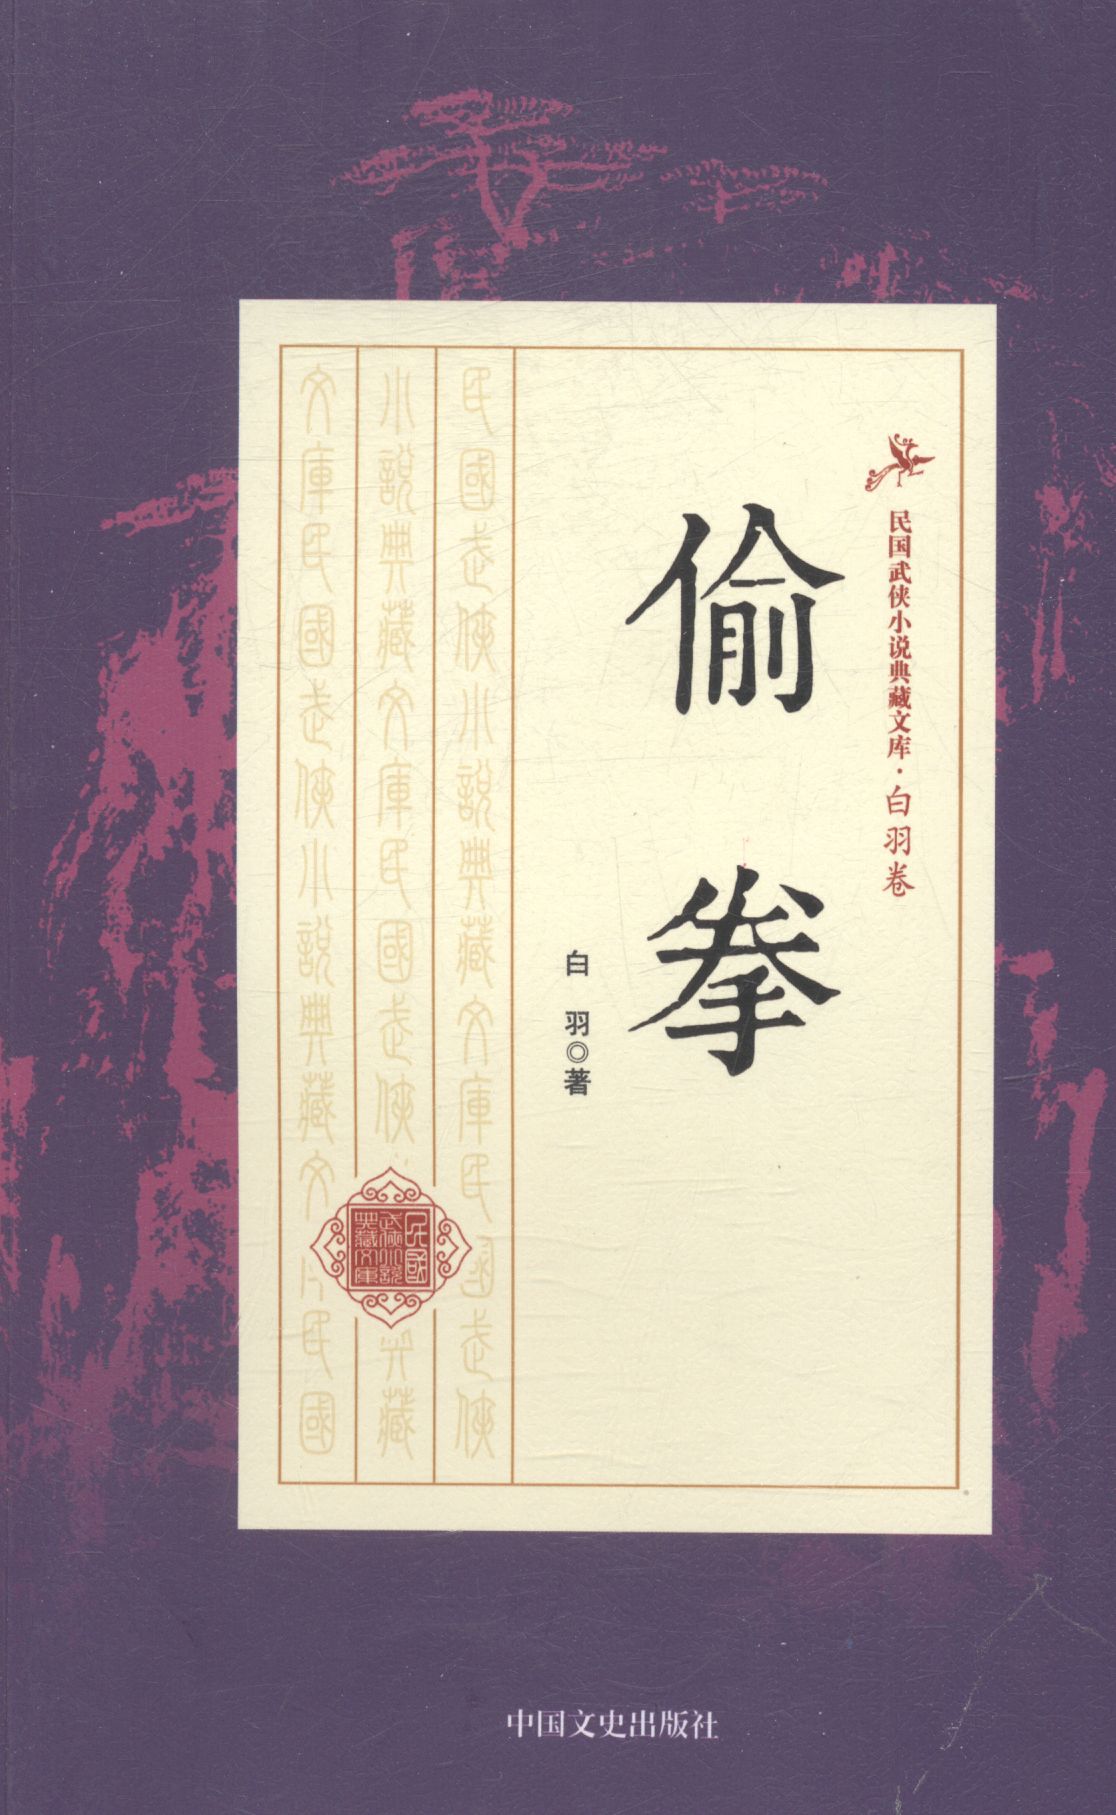 偷拳 小说 白羽著 中国文史出版社 9787503483653 epub格式下载